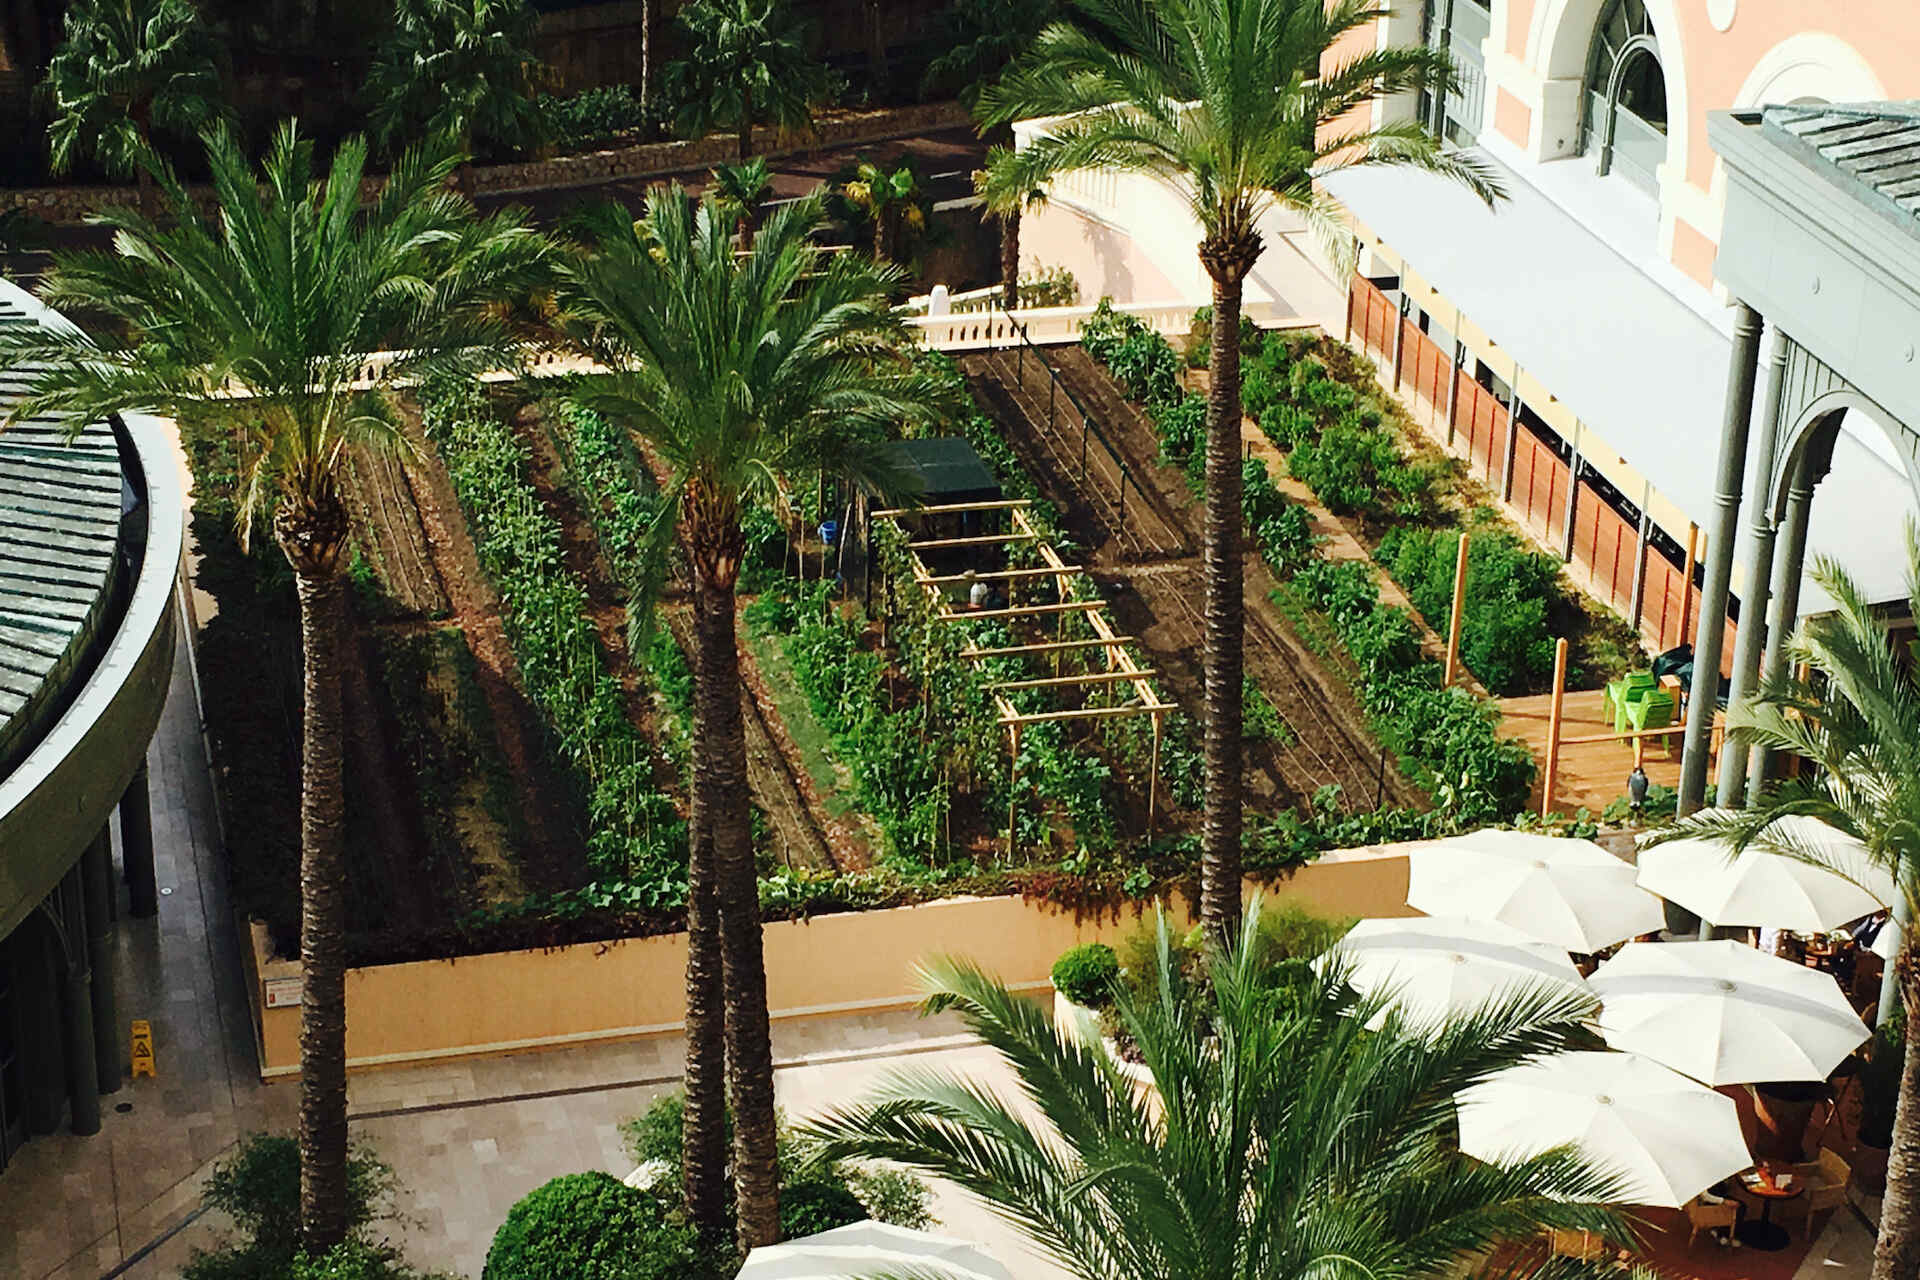 Société des Bains de Mer urmărește obiective „verzi” cu grădini de legume cu zero km în Monte-Carlo